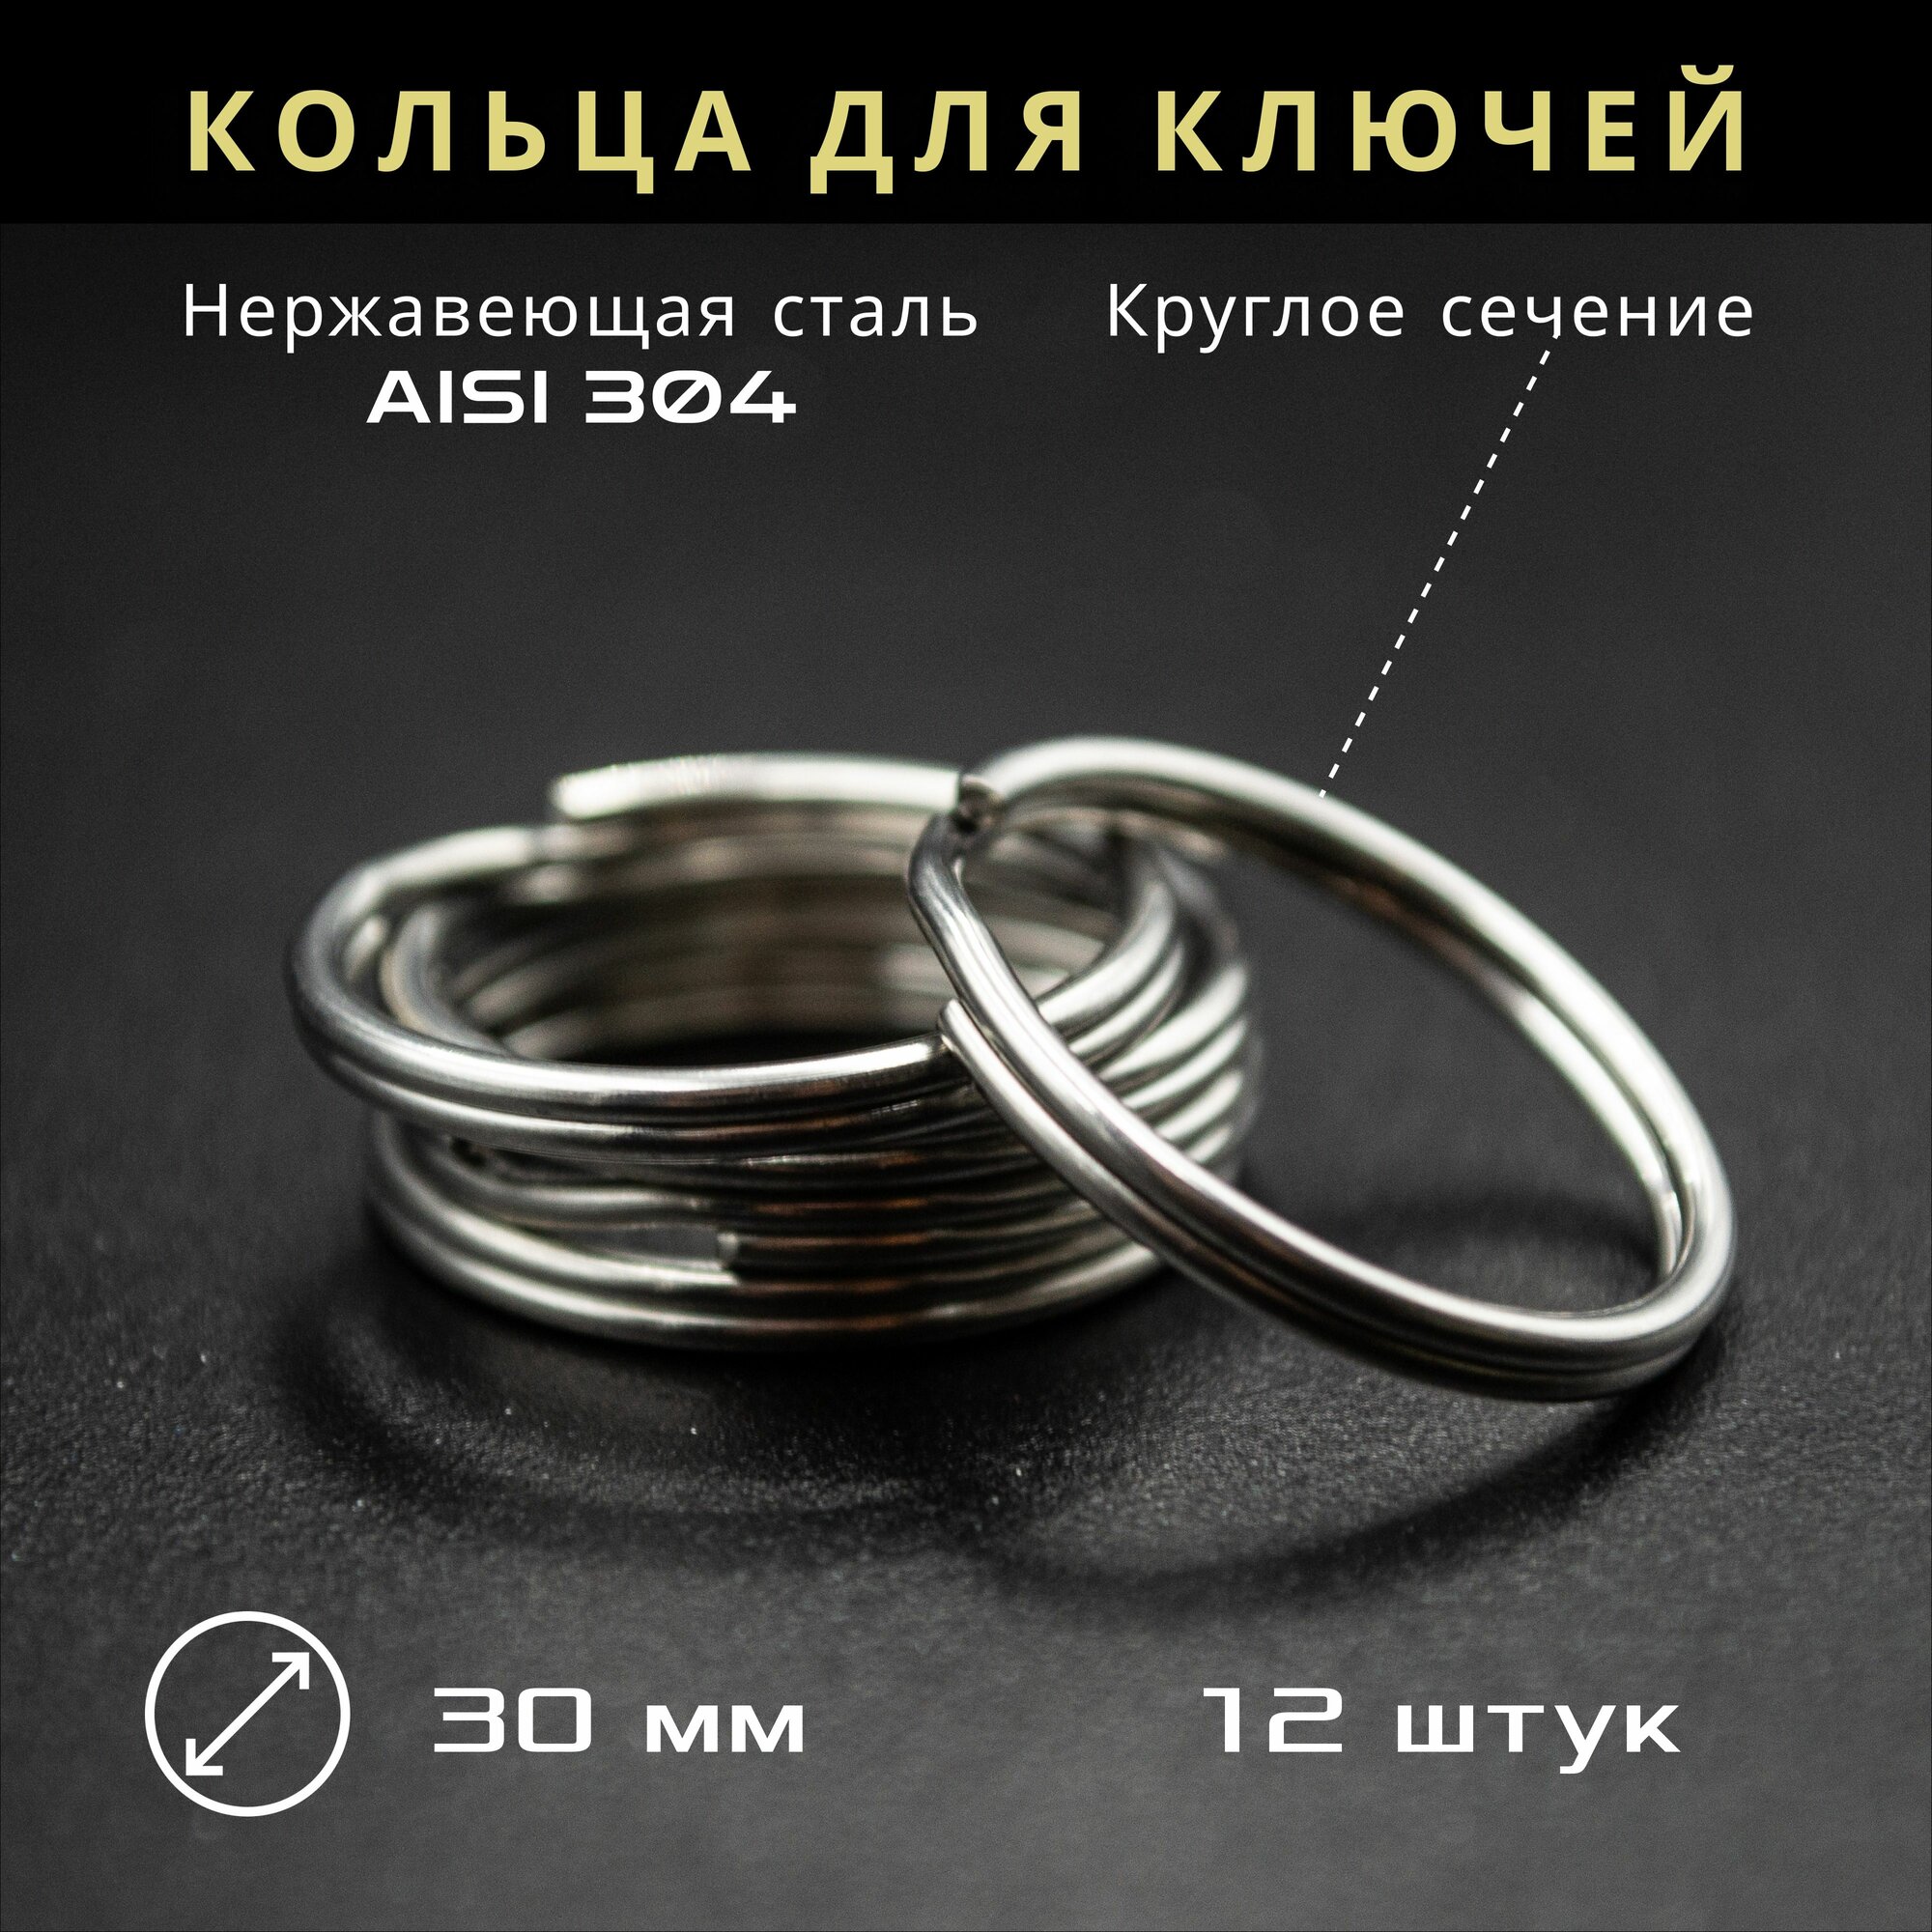 Кольцо для ключей и брелков нержавеющая сталь 35 мм 24 штуки круглое сечение серебристое